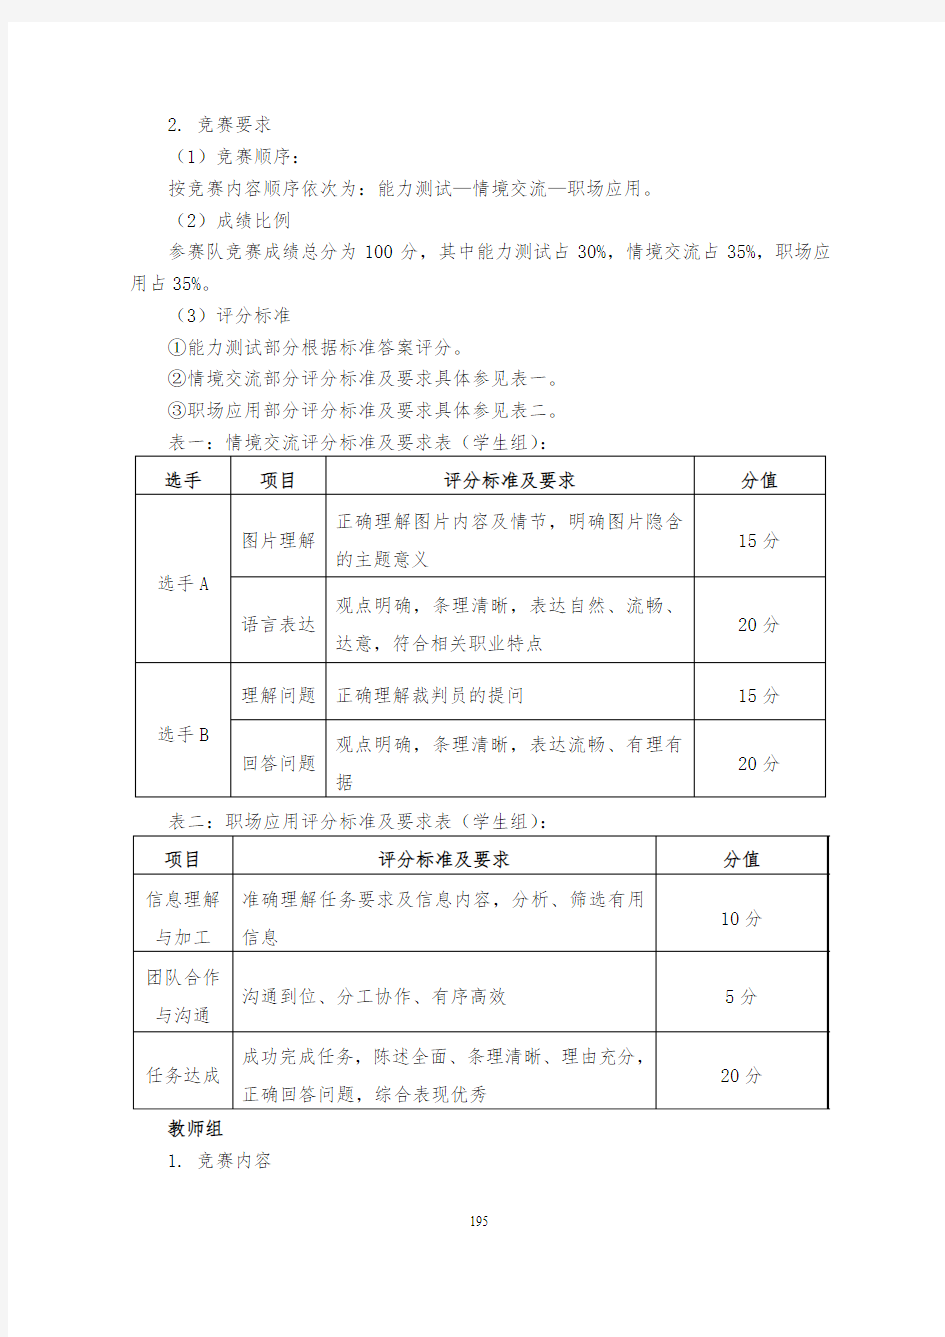 江苏省职业学校技能大赛职业英语类方案